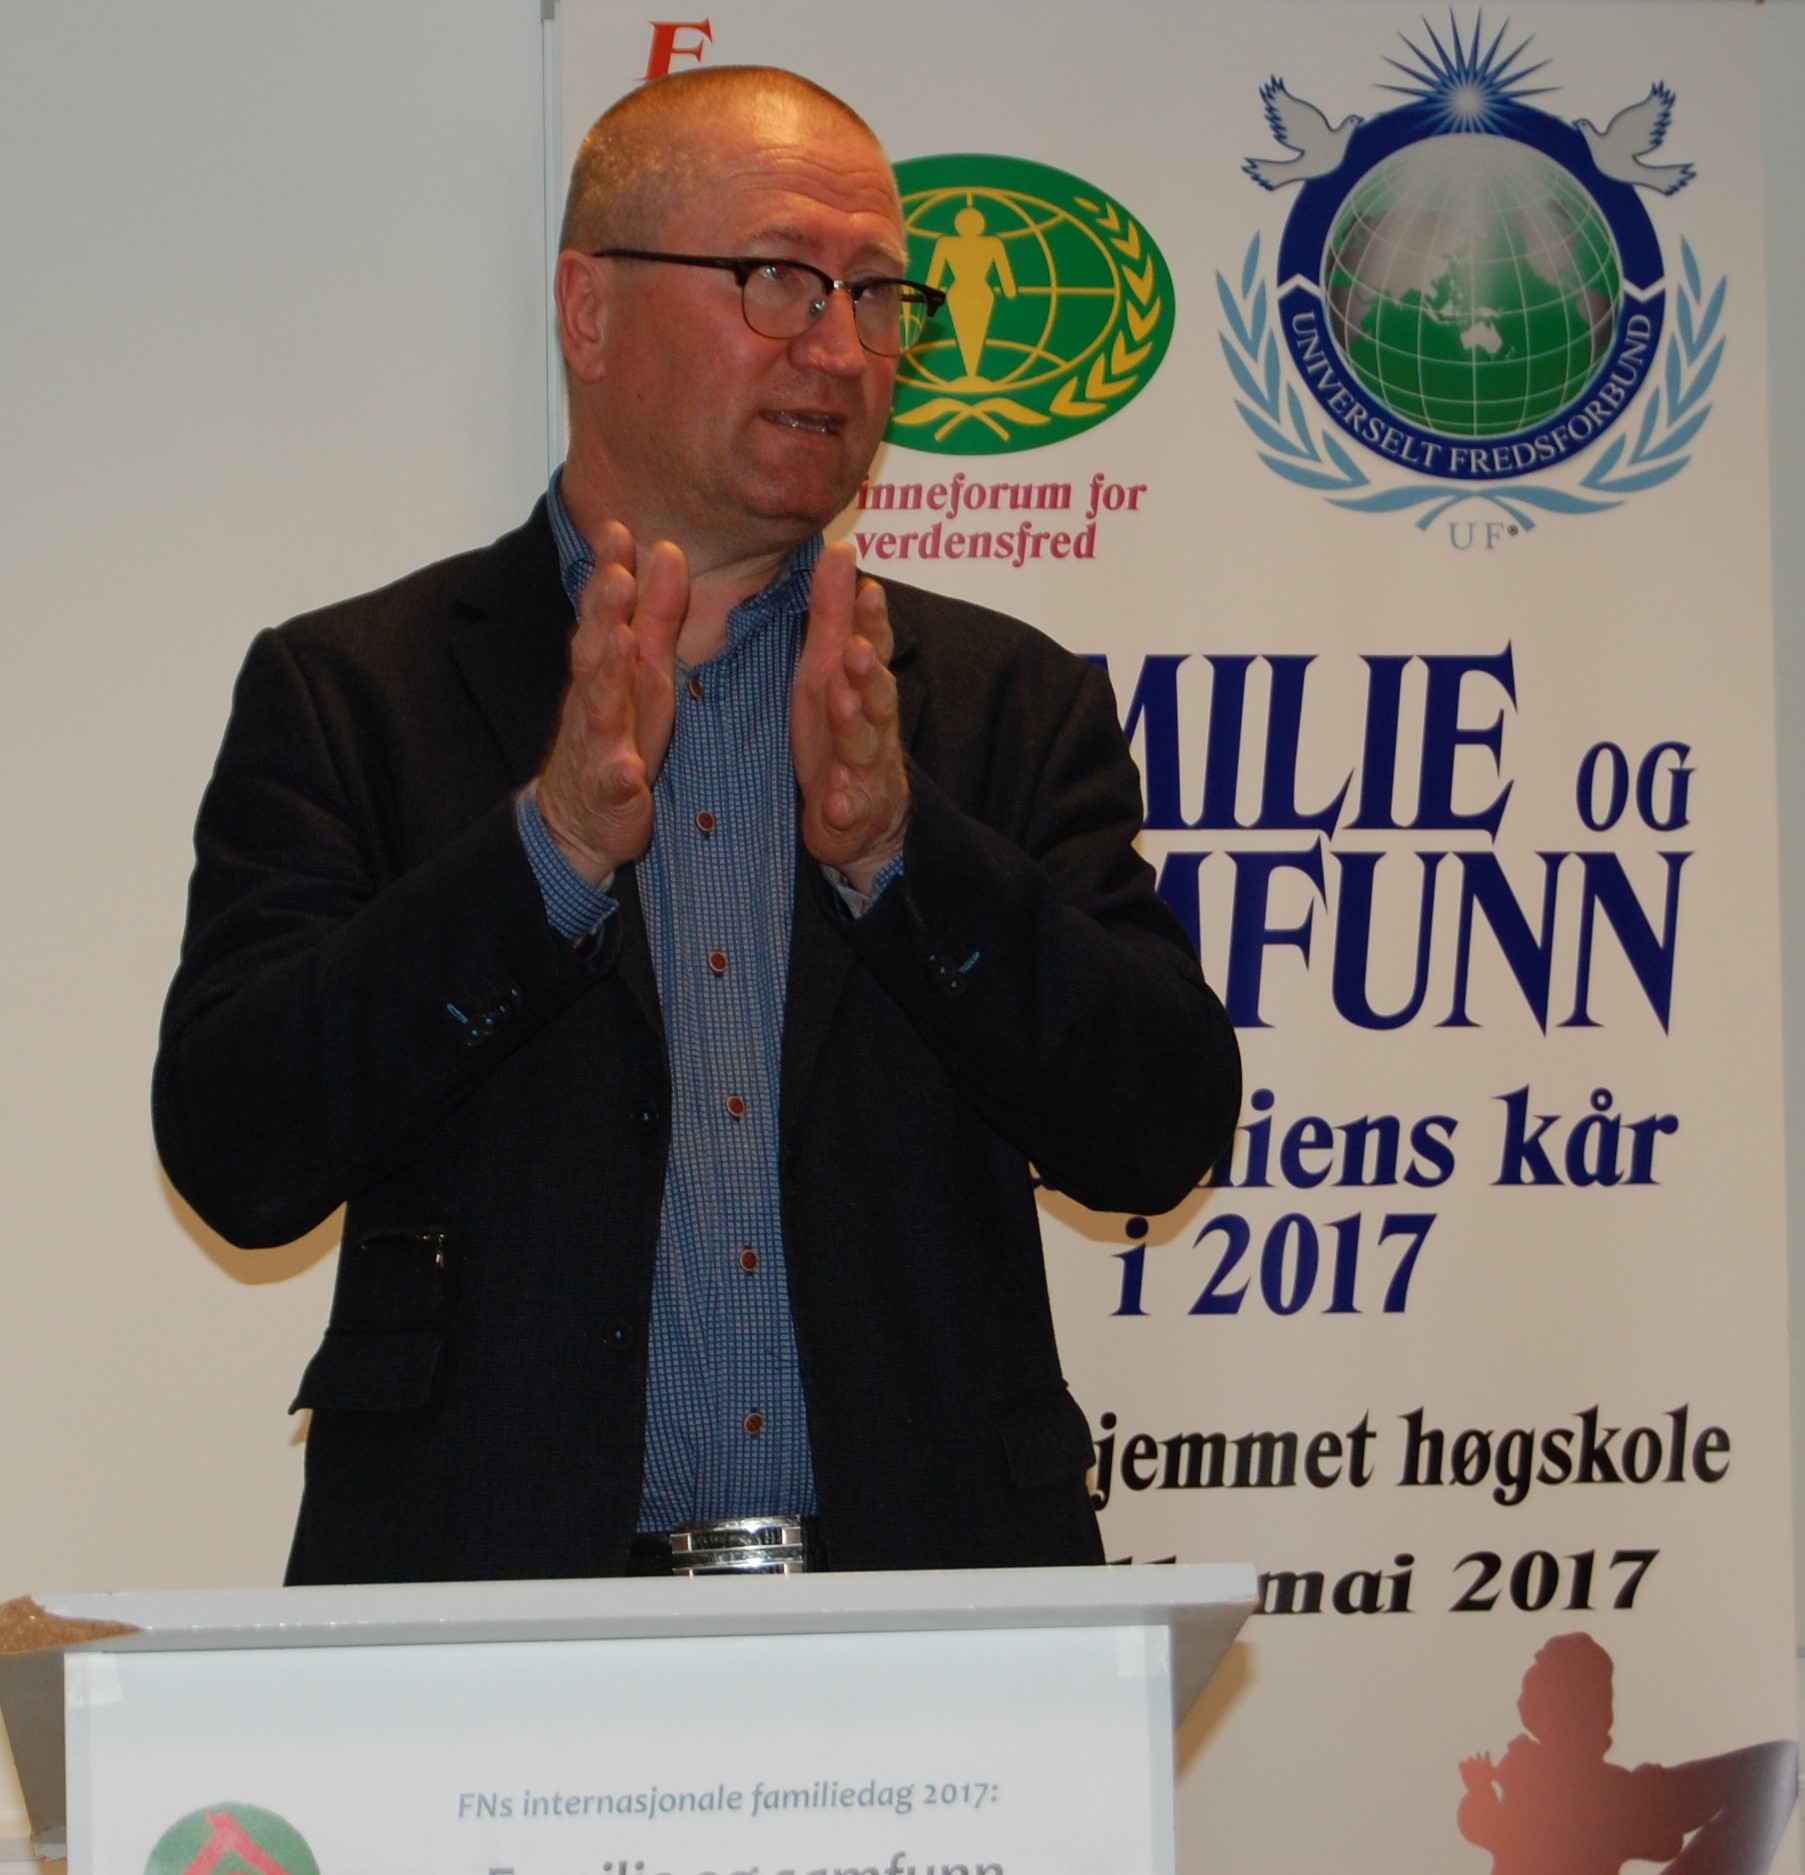 MP Geir Jørgen Bekkevold